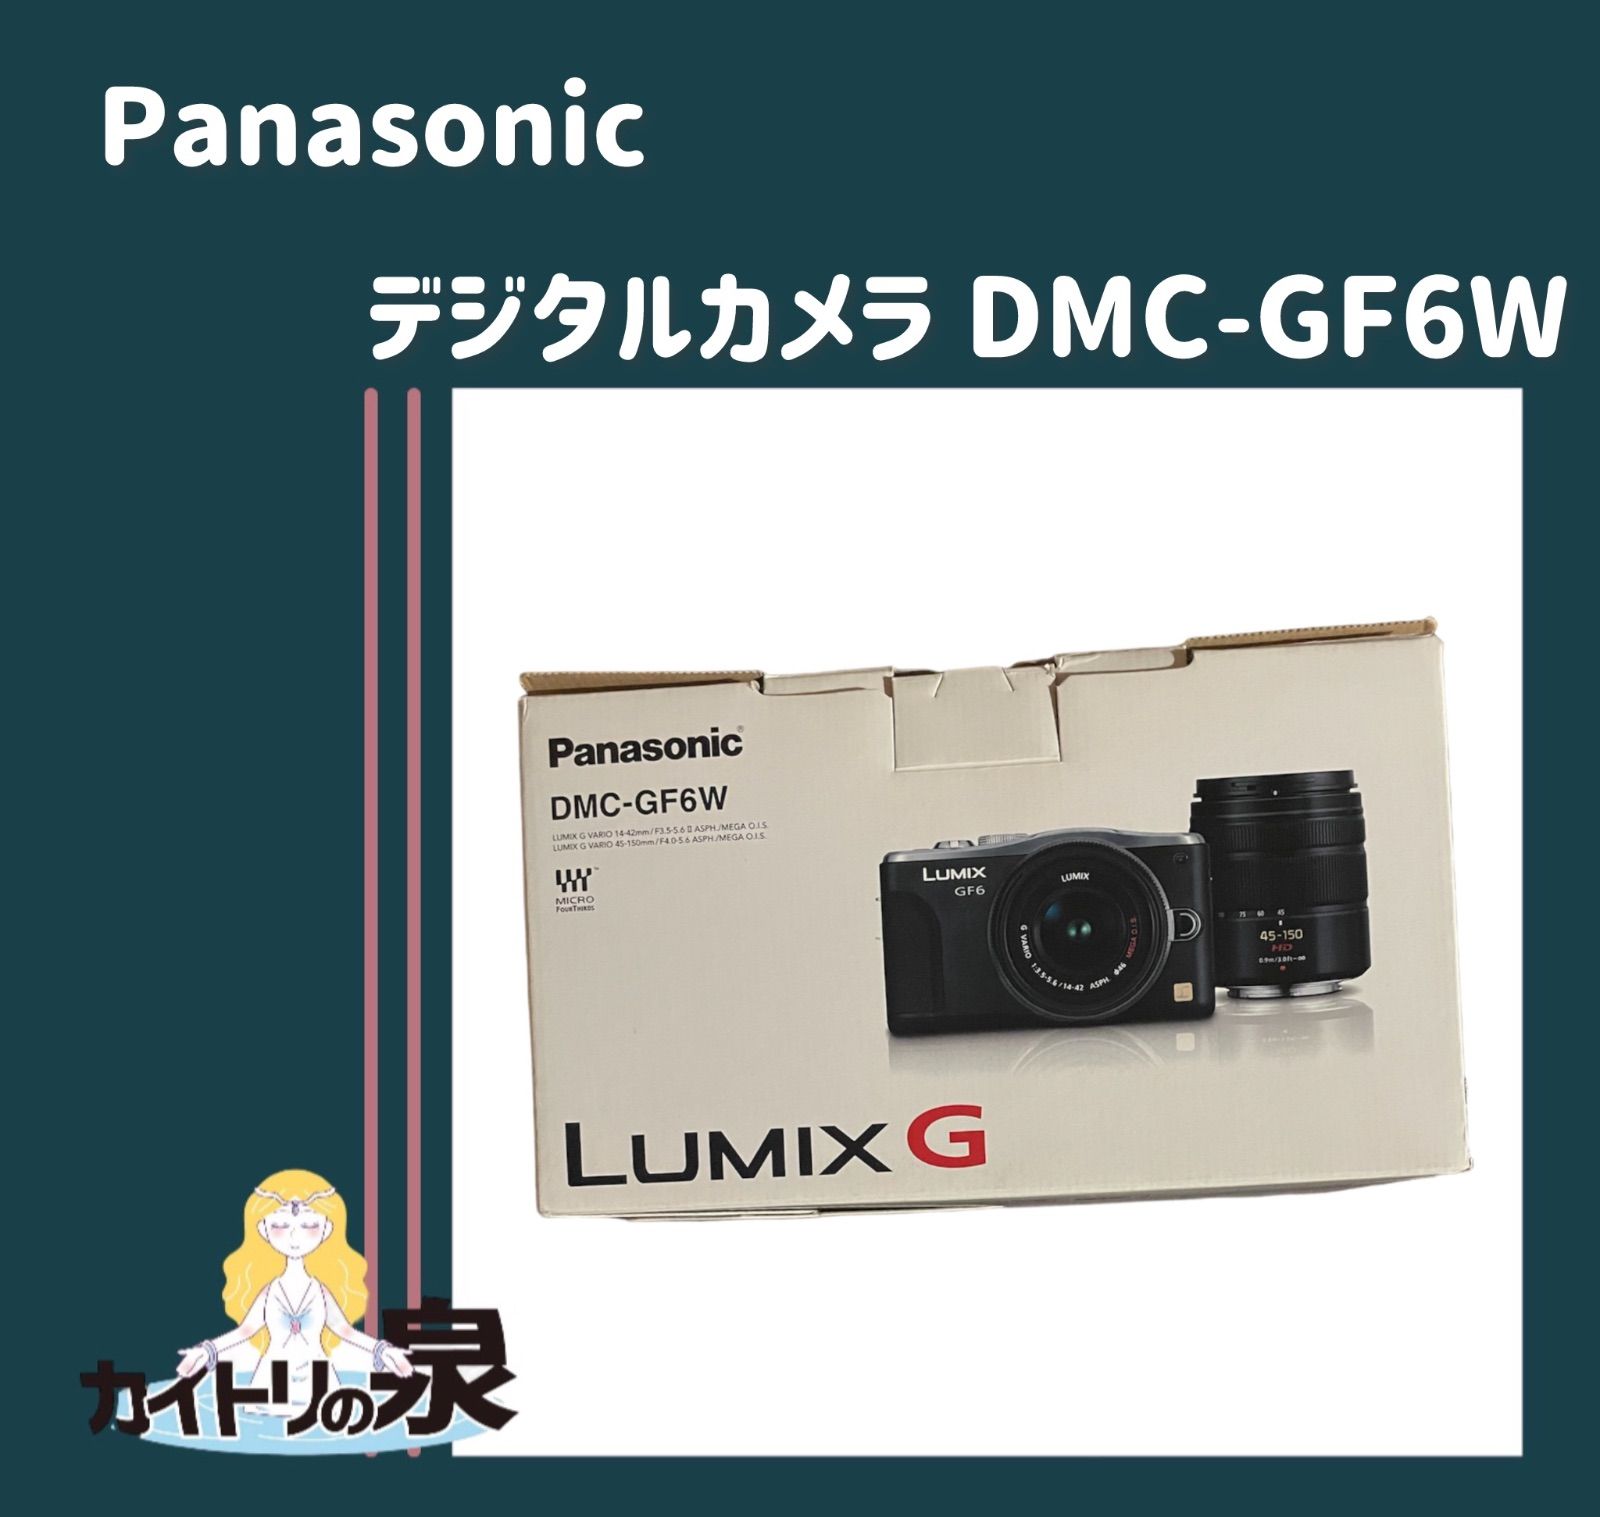 Panasonic パナソニックデジタルカメラ LUMIX G DMC-GF6W ダブルズームレンズキット - メルカリ